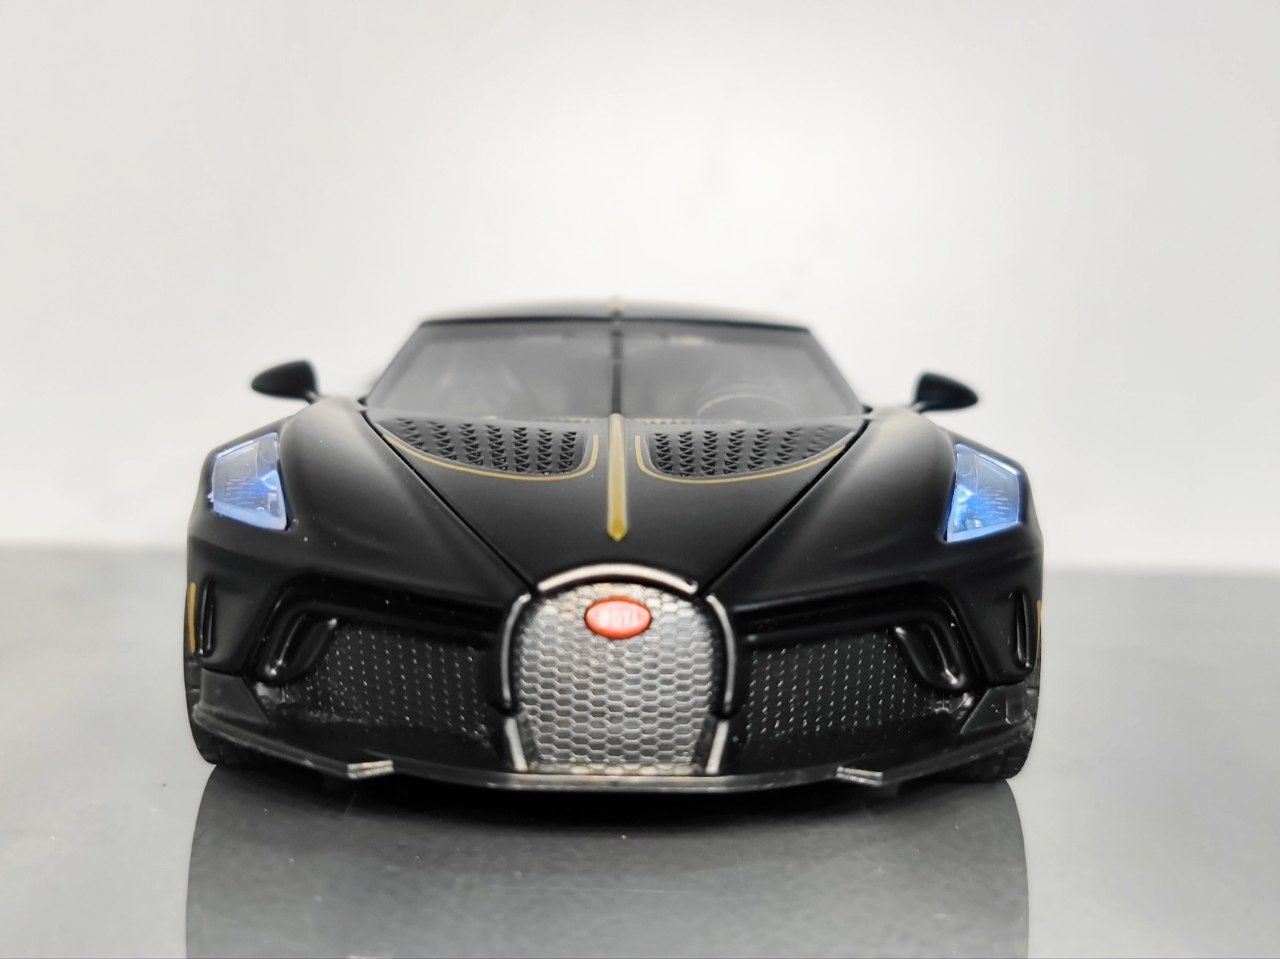 Bugatti La Voiture Noire железная машинка масштабная модель - Доставка